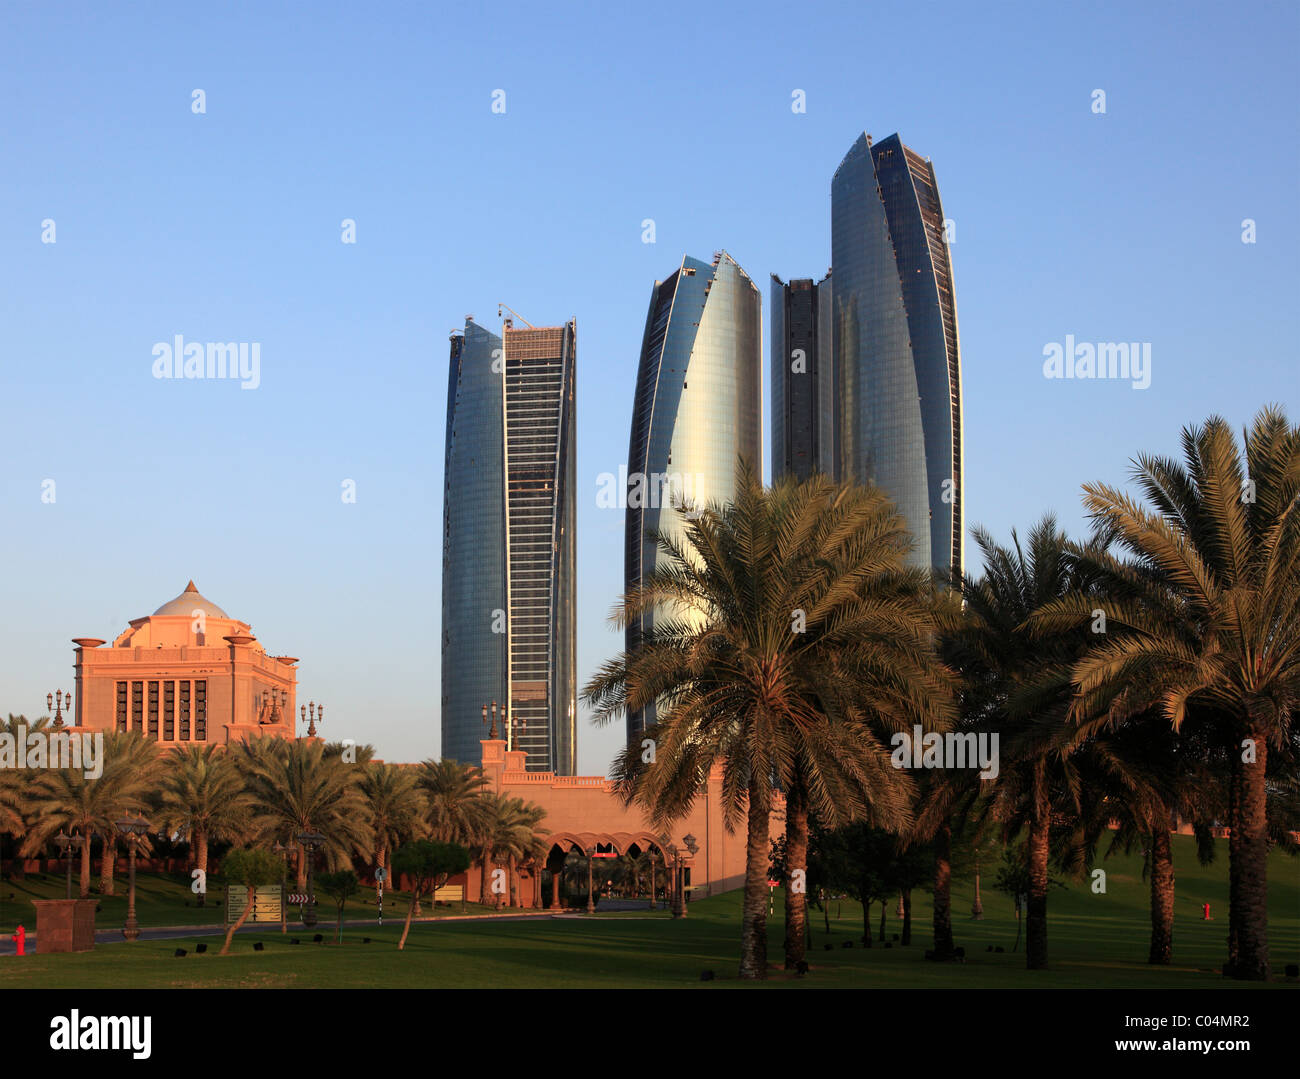 United Arab Emirates, Abu Dhabi, Etihad Towers, Stock Photo